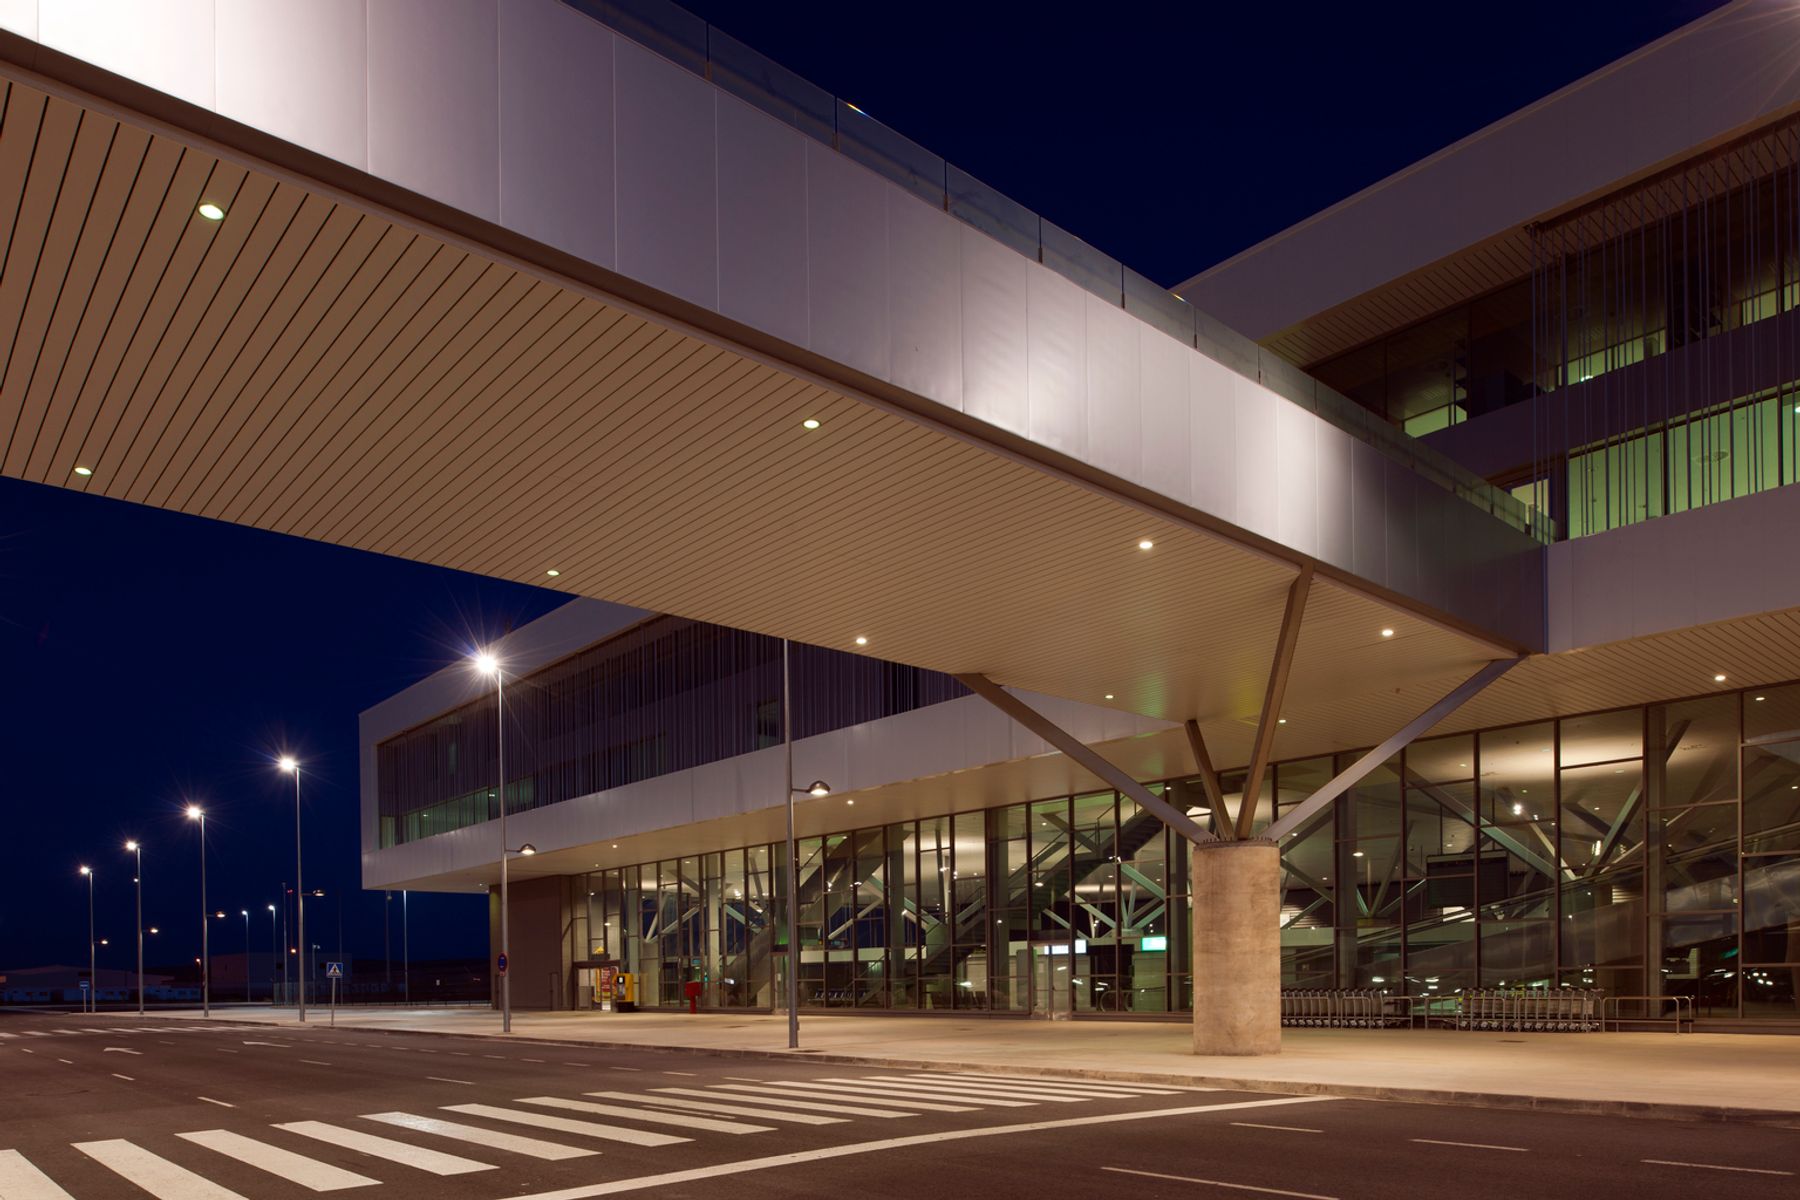 Aeropuerto de Ciudad Real, Ciudad Real. Arquitectura: Bernalte & Leòn Asociados, Ciudad Real. Fotografía: Thomas Mayer, Neuss.